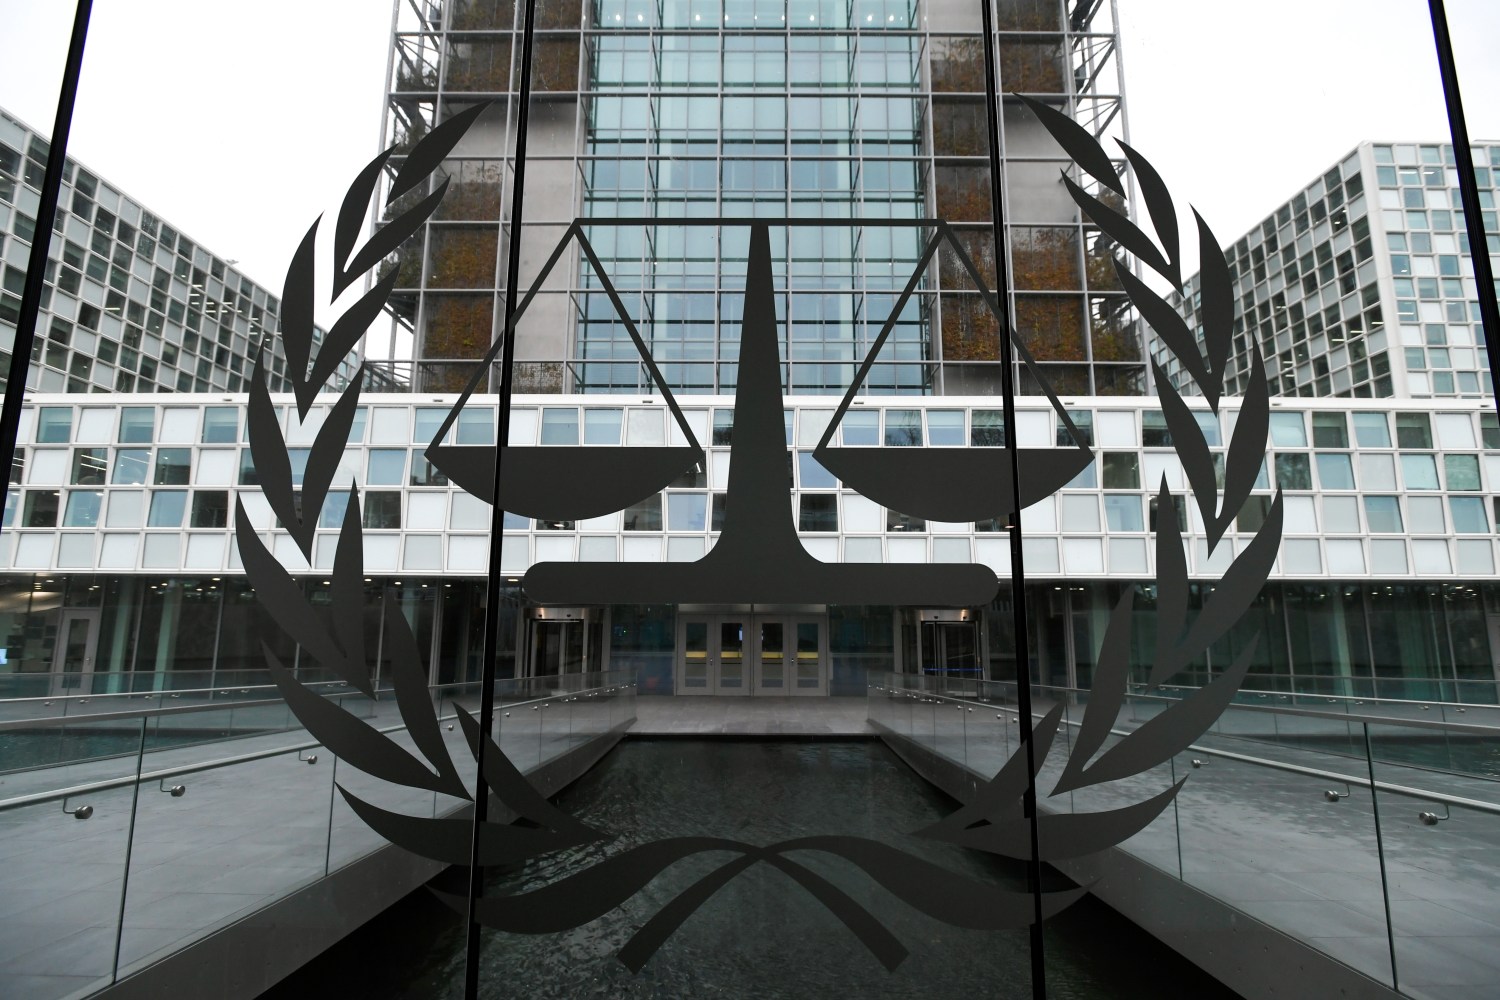 The International Criminal Court building is seen in The Hague, Netherlands, January 16, 2019. REUTERS/Piroschka van de Wouw